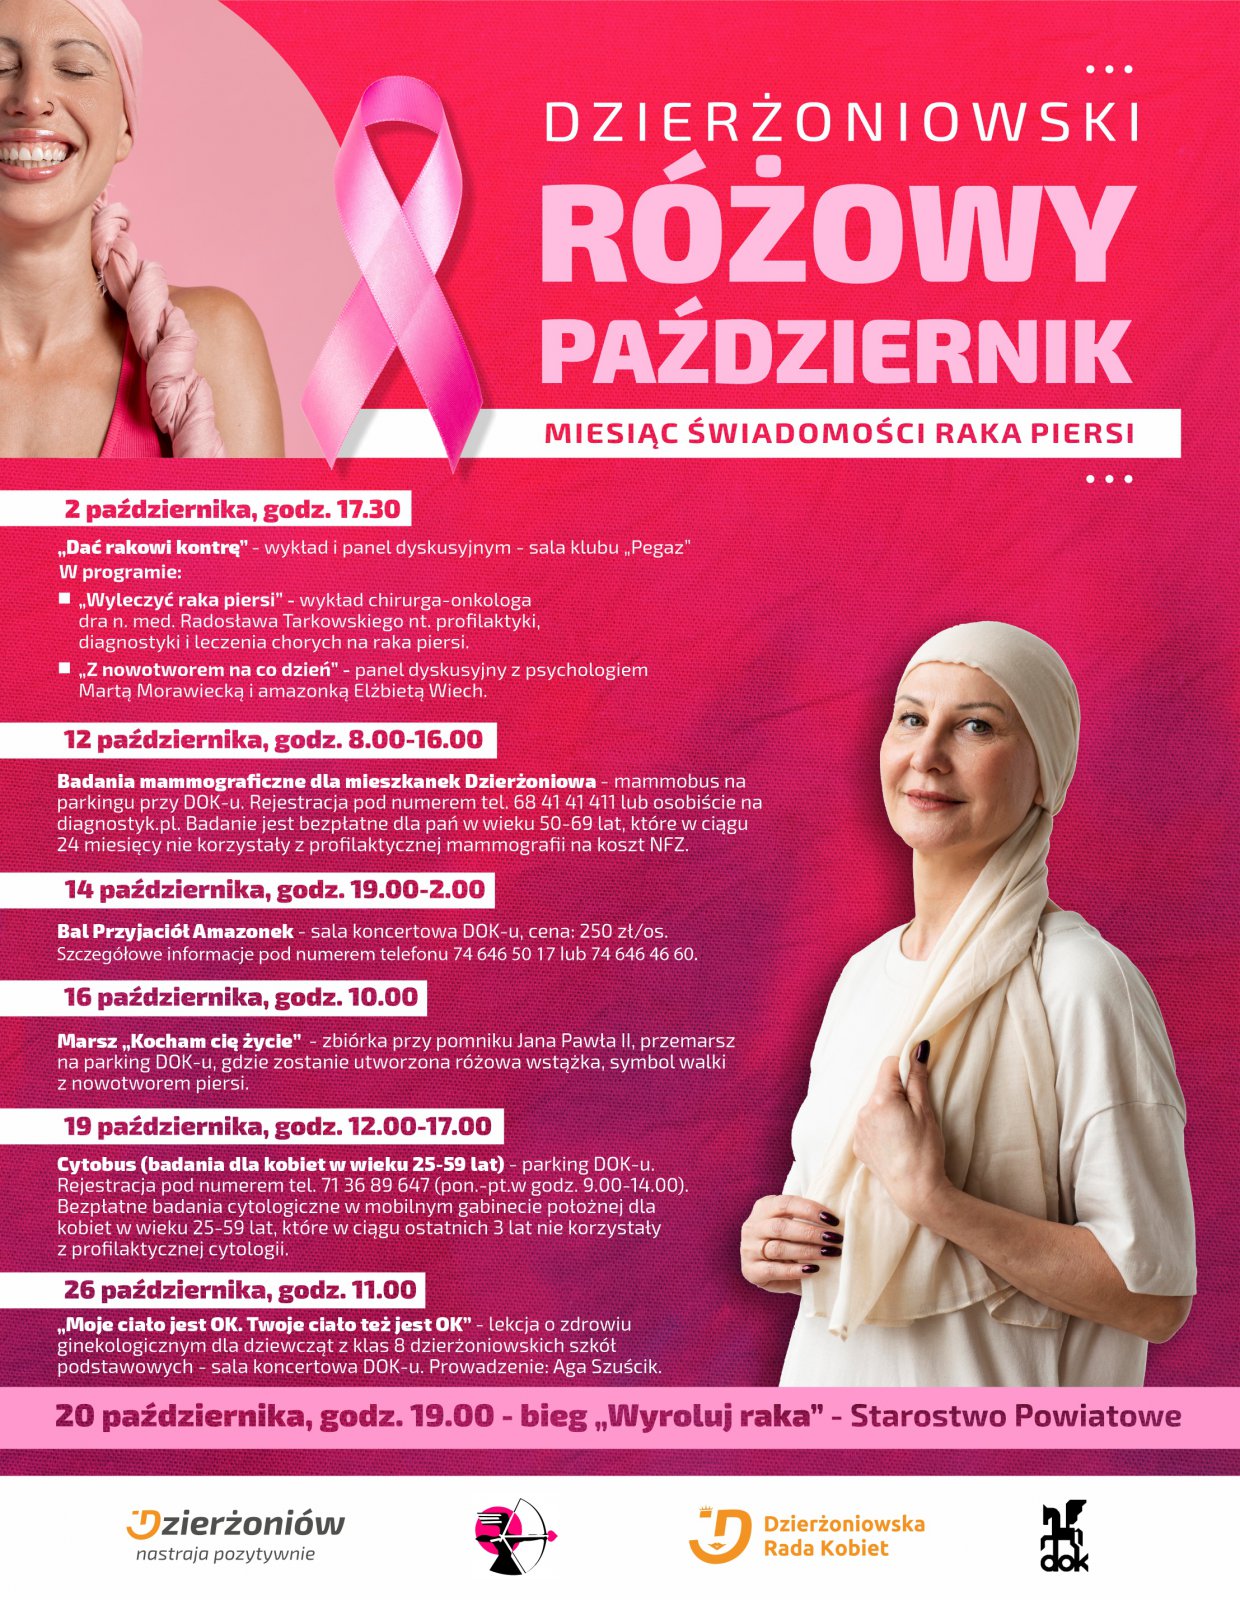 Plakat ze zdjeciem uśmiechniętej kobiety w różowej chuście i informacje podane w tekście